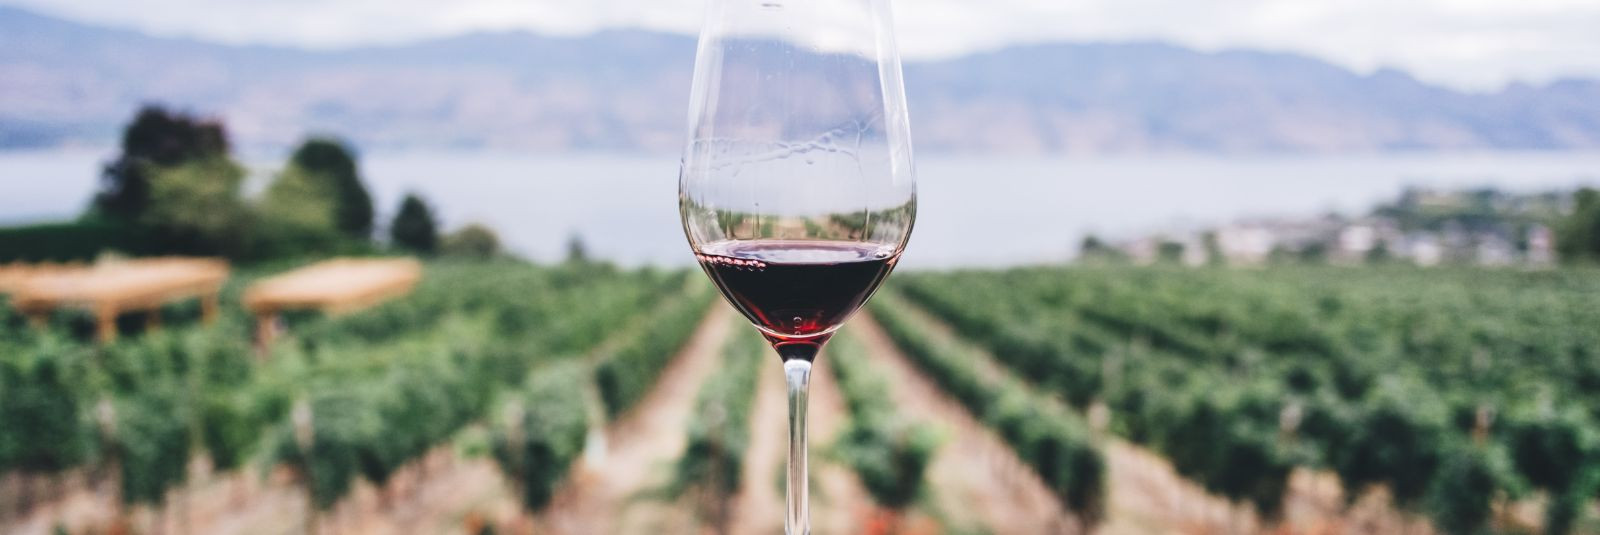 Bordeaux vein on nagu ajarännak läbi viinamarjade kootud lõimede, mis kannavad endas aastatepikkust ajalugu, kirge ja kunsti. See Prantsusmaa legendaarne veinip